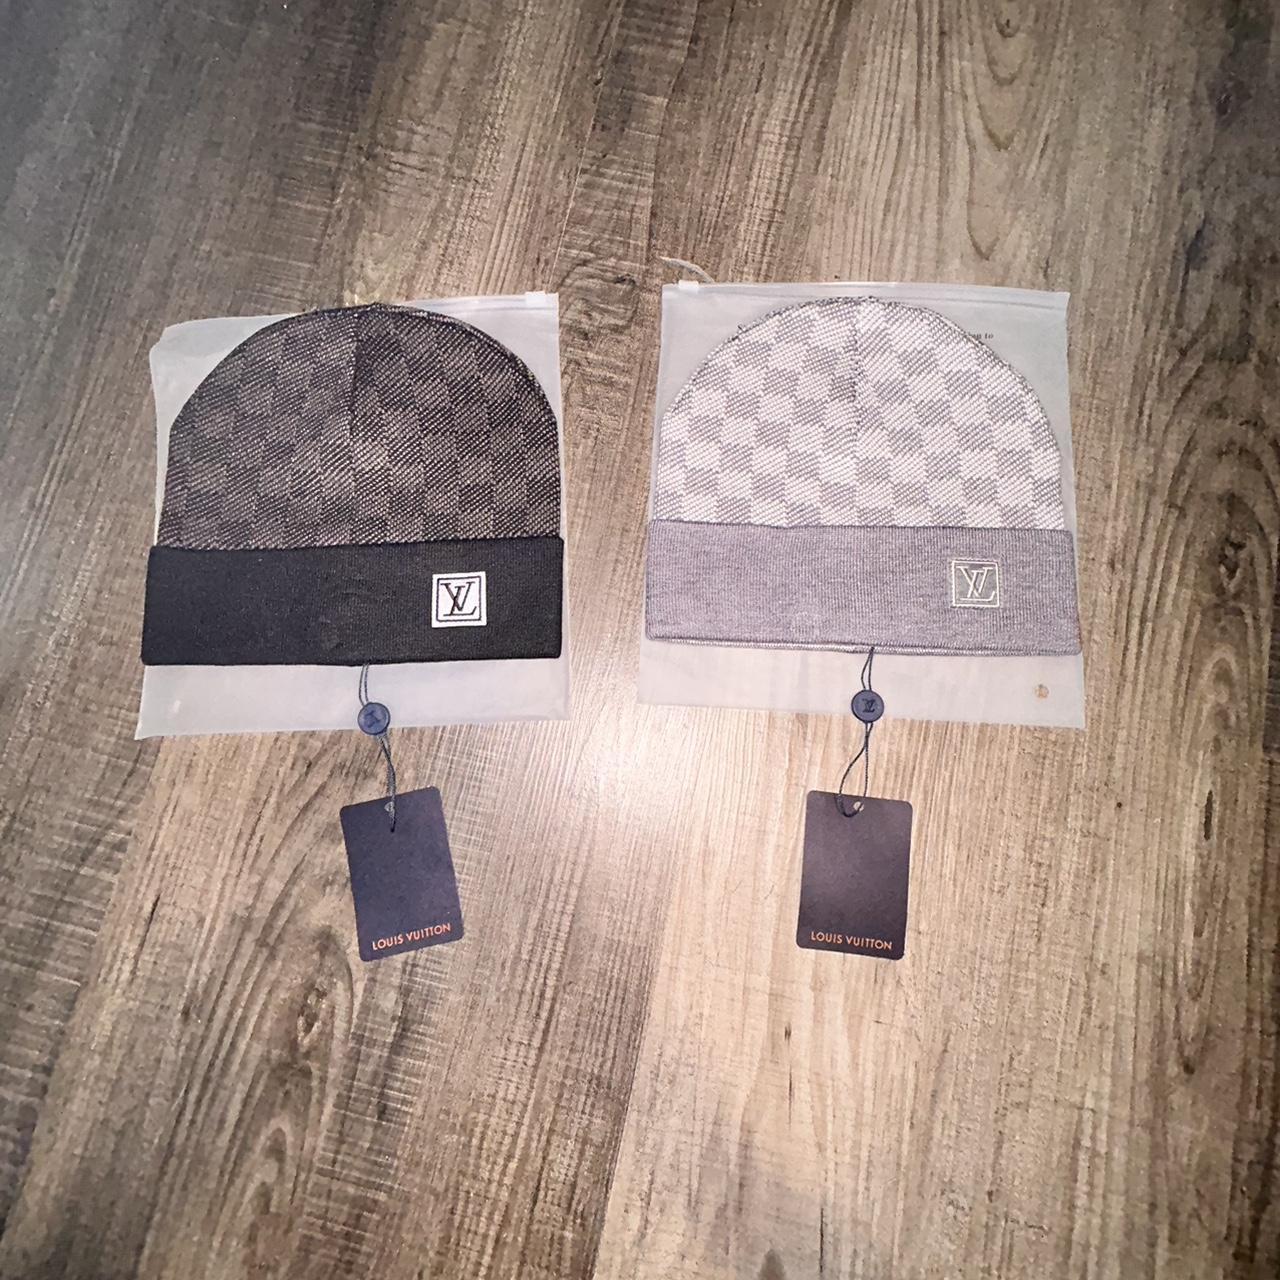 Louis Vuitton Beanie Gently Worn One Size Grey/ - Depop